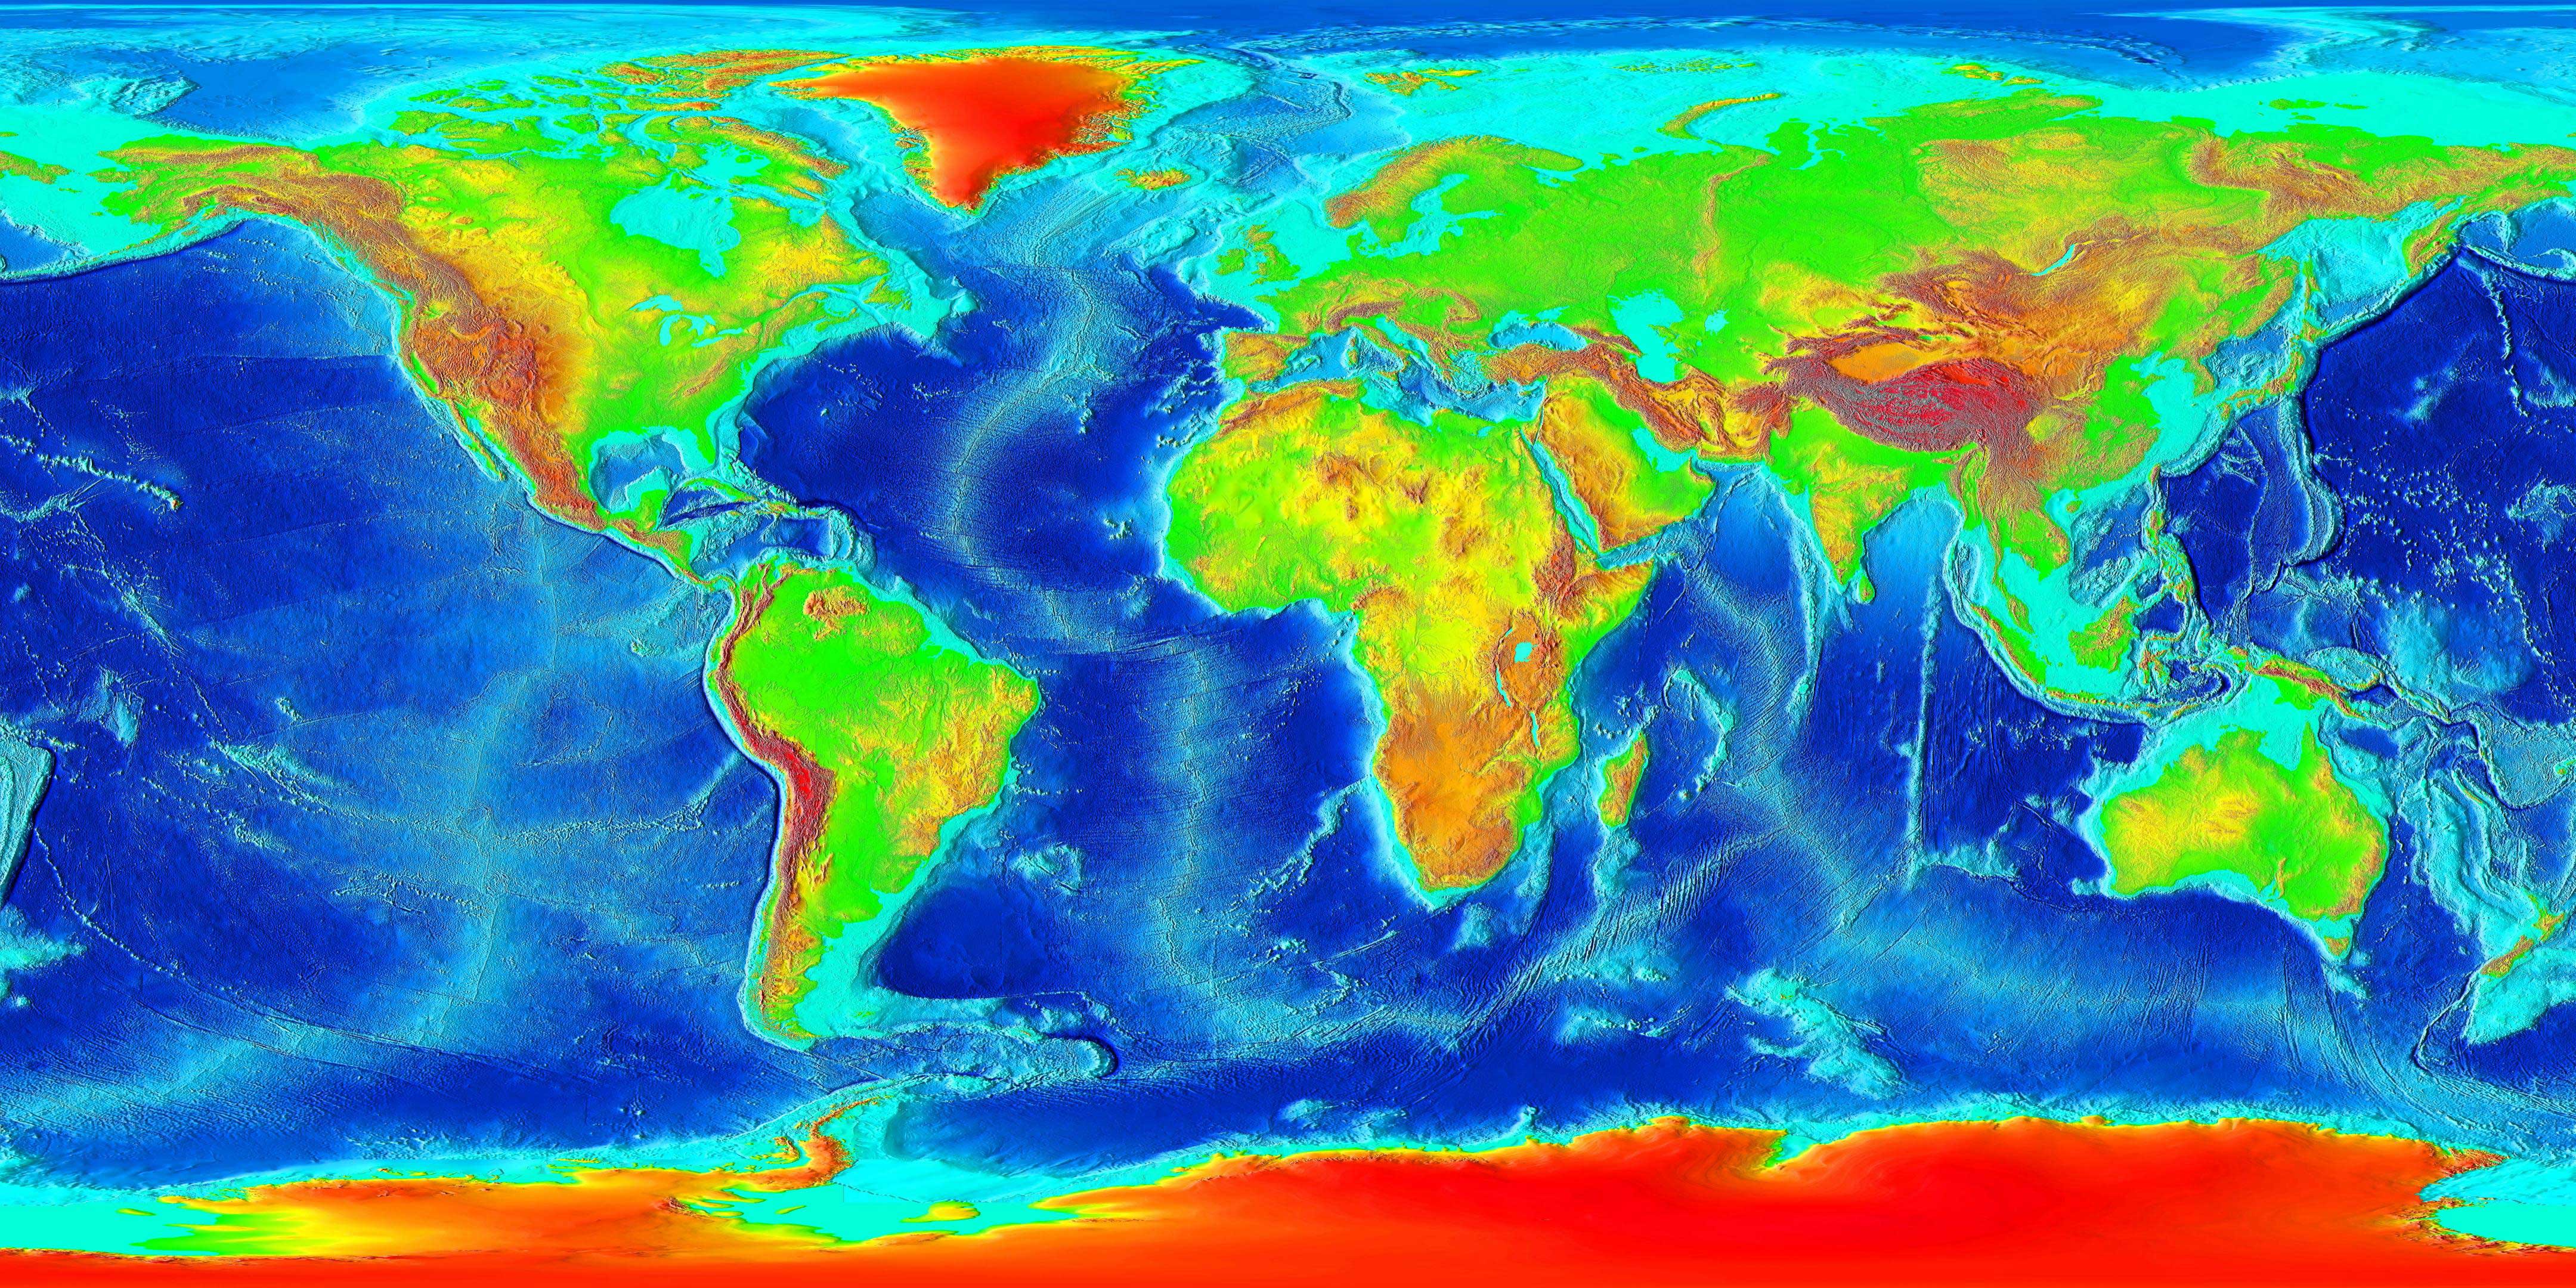 全球land and undersea elevation. Continental shelves are shown in bright blue. Credit: NOAA